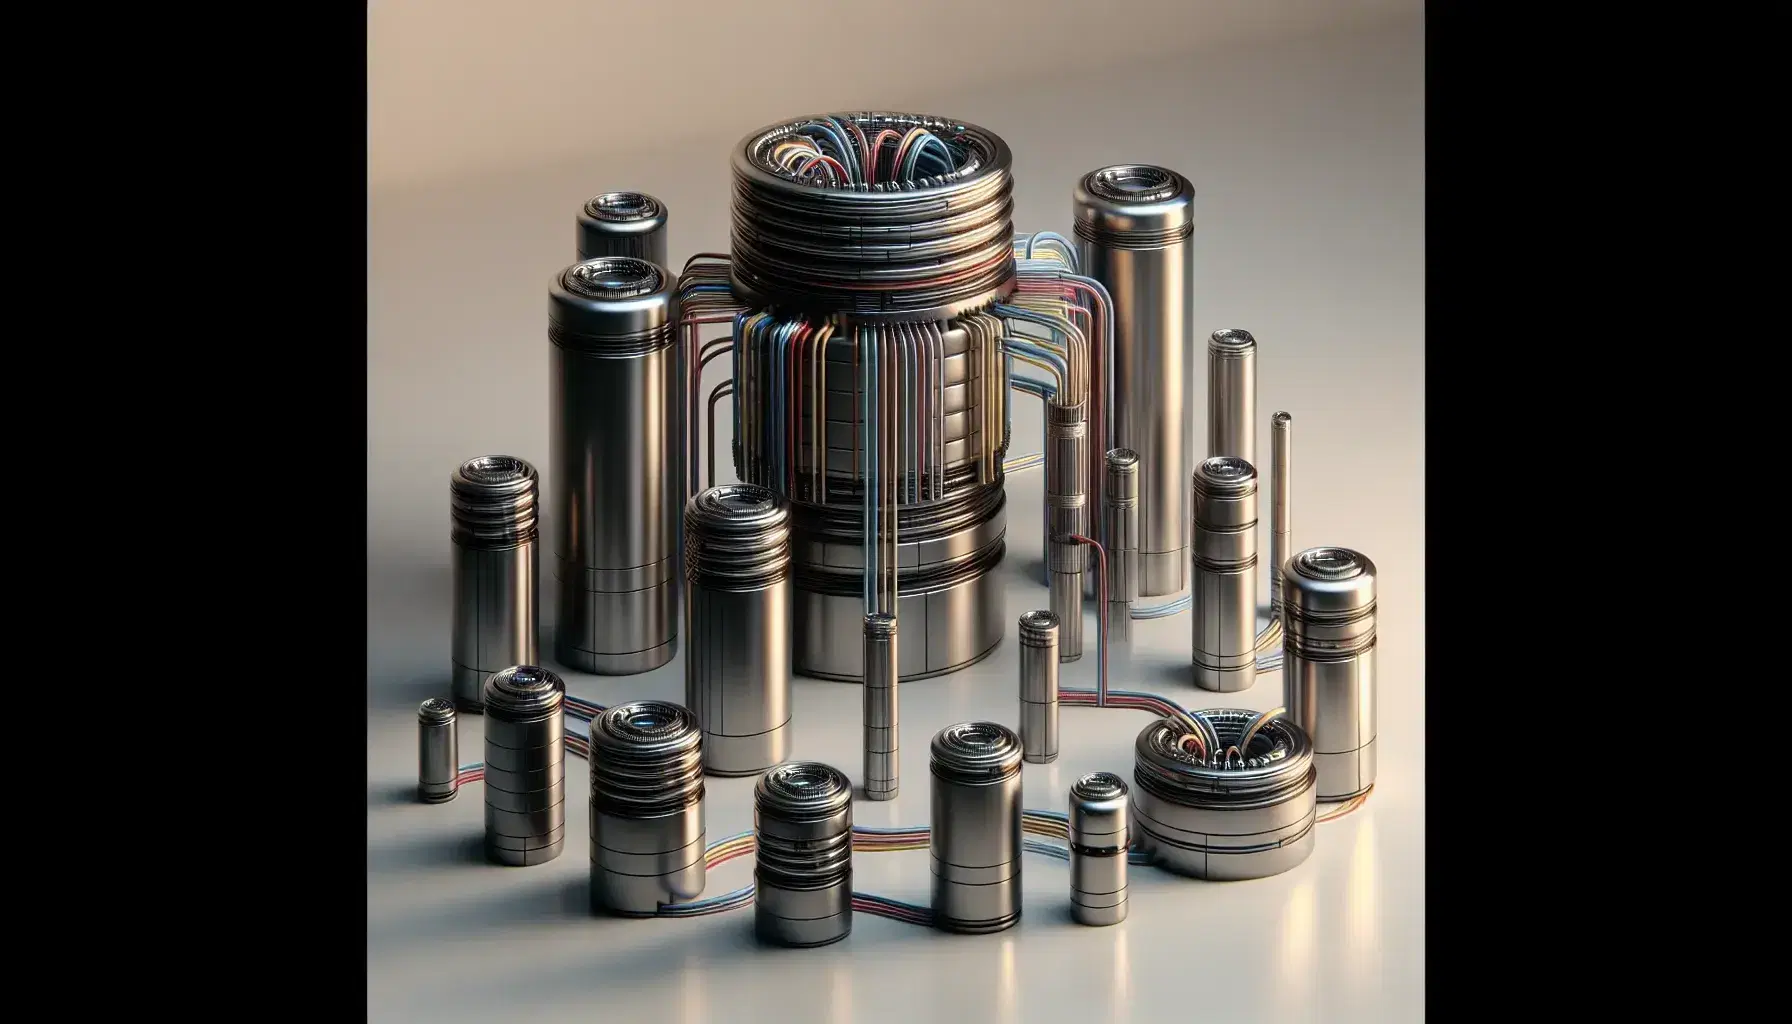 Cilindros metálicos de distintos tamaños en superficie lisa con tubos y cables conectados, reflejando precisión y tecnología avanzada.